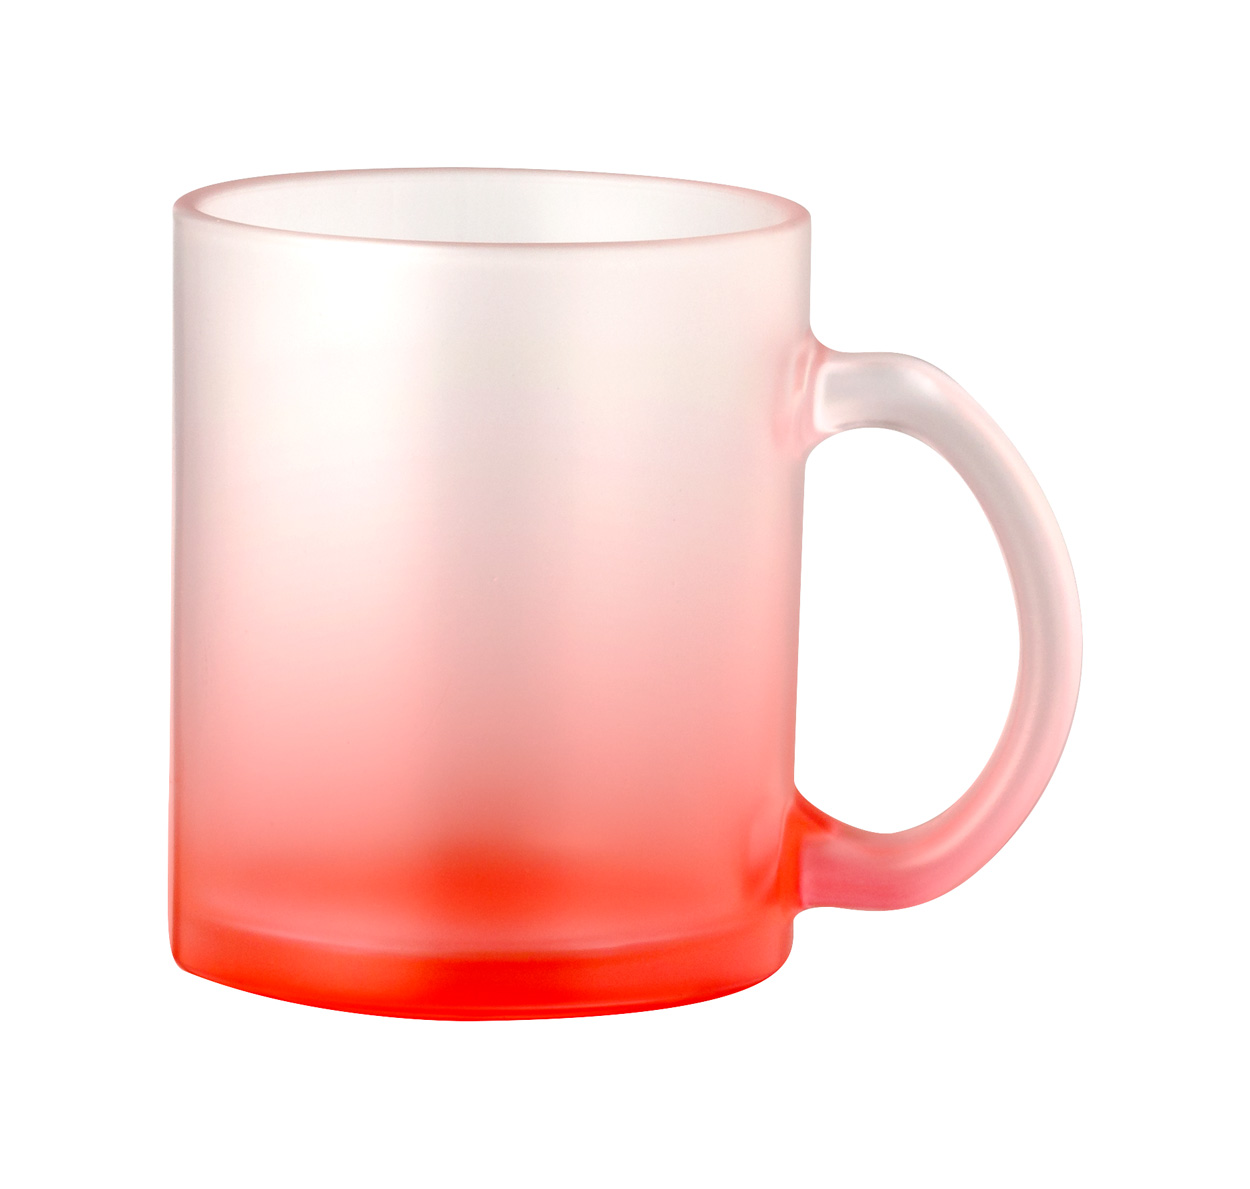 Osaka sublimation mug - red